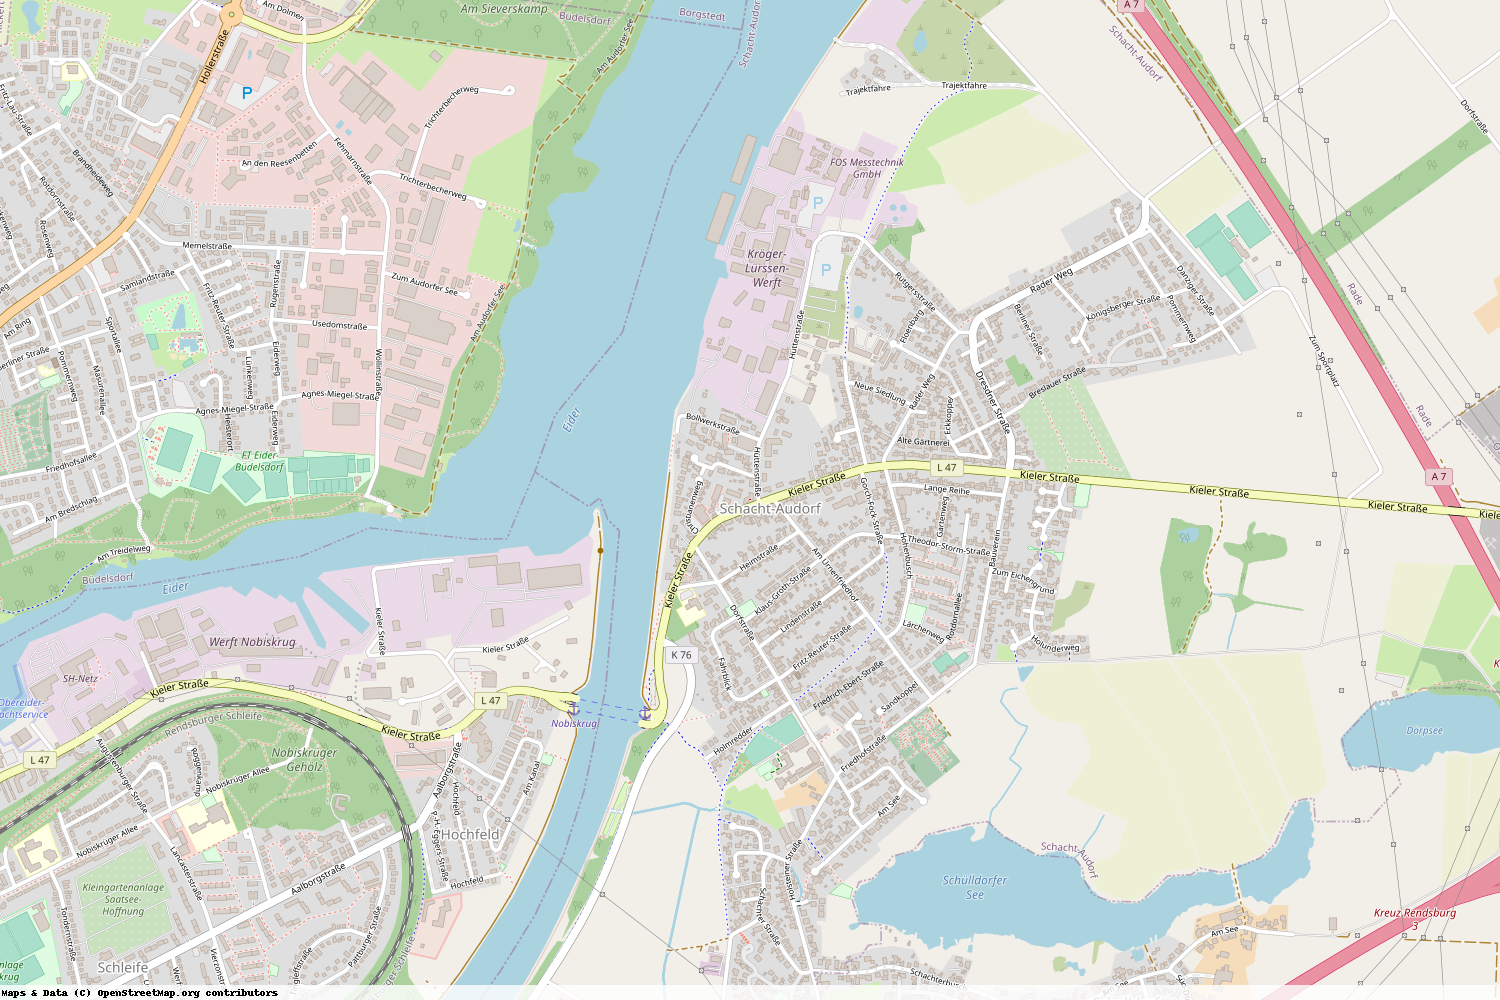 Ist gerade Stromausfall in Schleswig-Holstein - Rendsburg-Eckernförde - Schacht-Audorf?